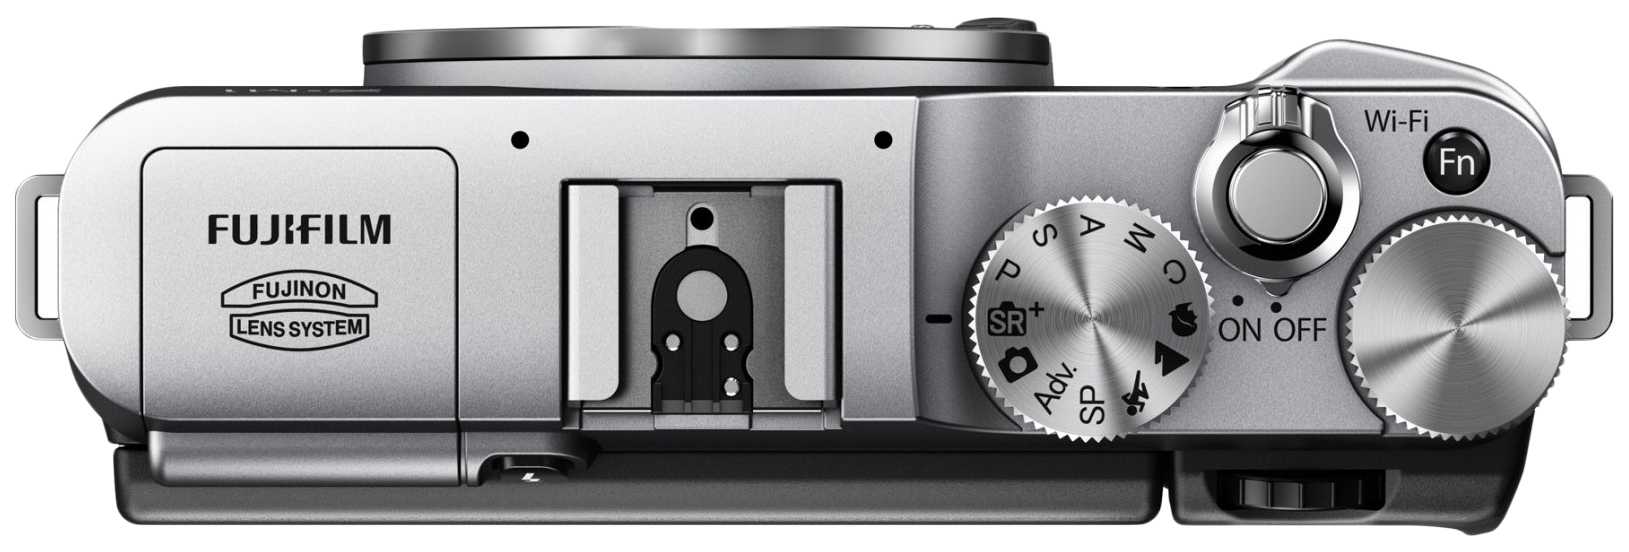 Fujifilm x-m1 kit купить по акционной цене , отзывы и обзоры.